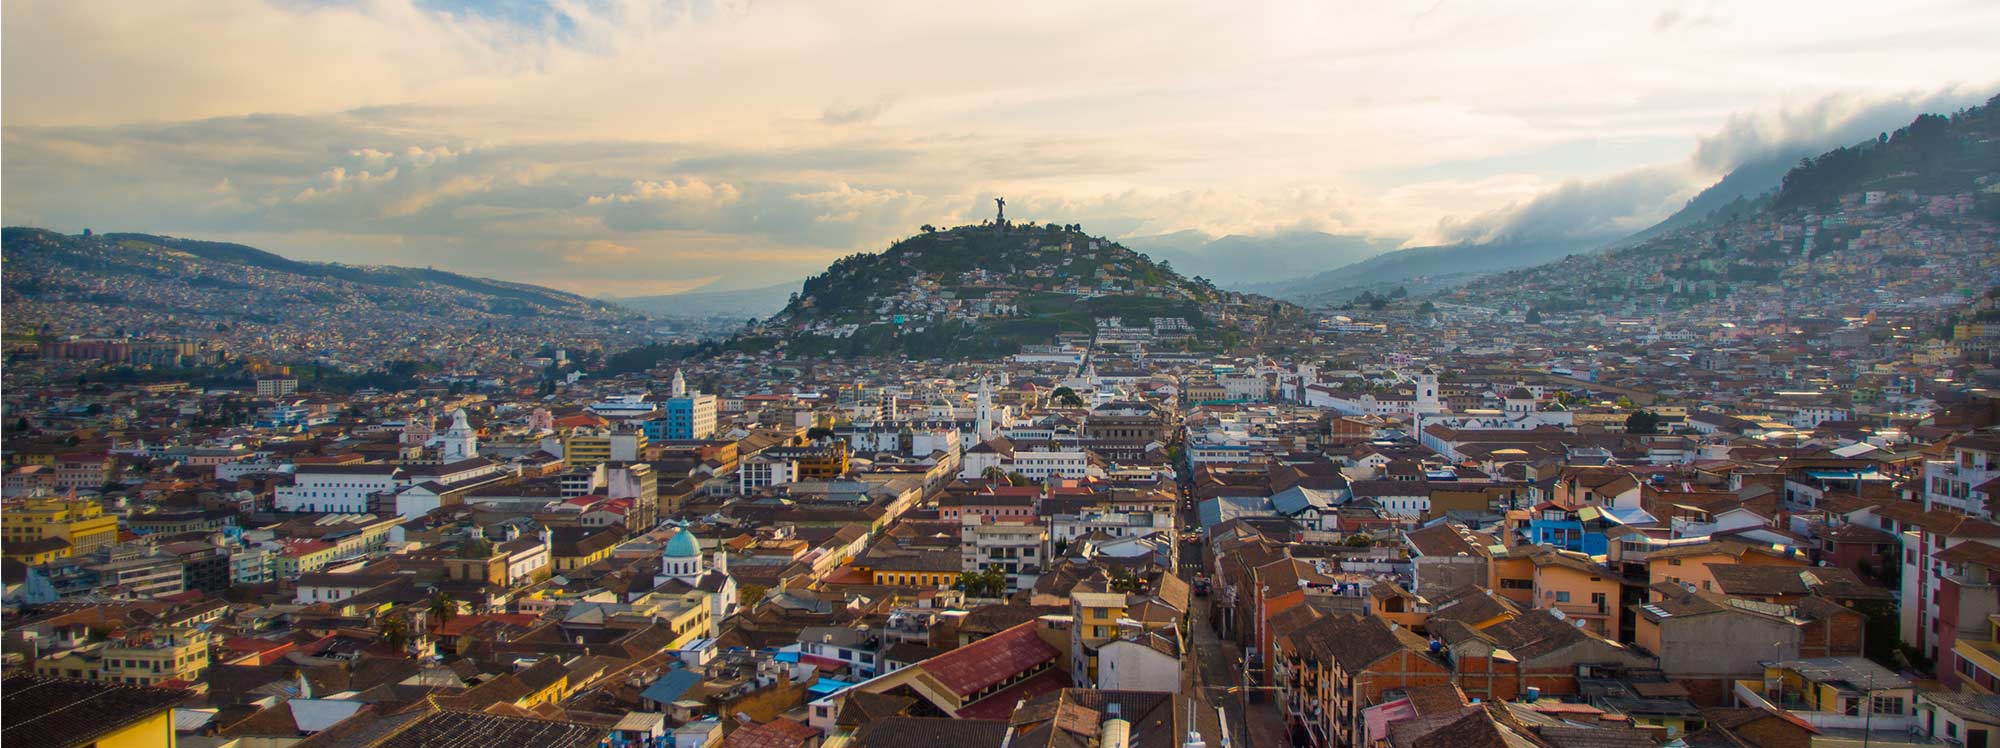 Historia de Quito: ciudad clave en el poderío incaico